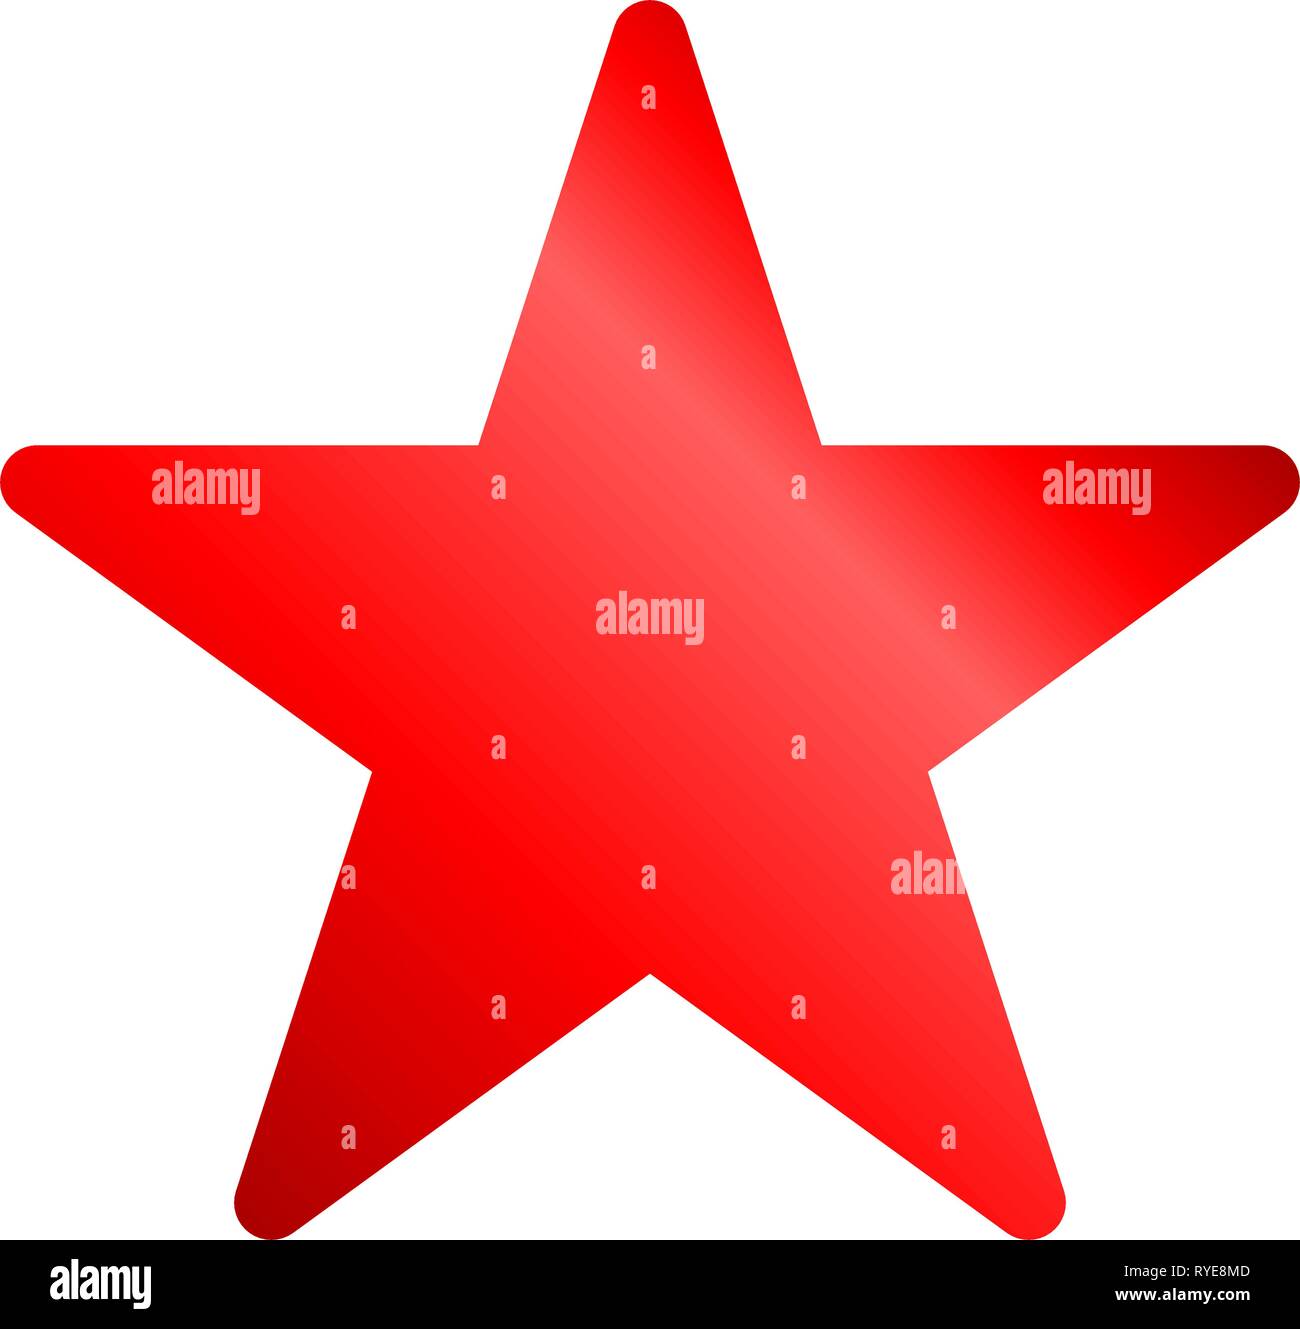 L'icône Star - rouge dégradé, a fait 5 arrondi, isolé - vector illustration Illustration de Vecteur